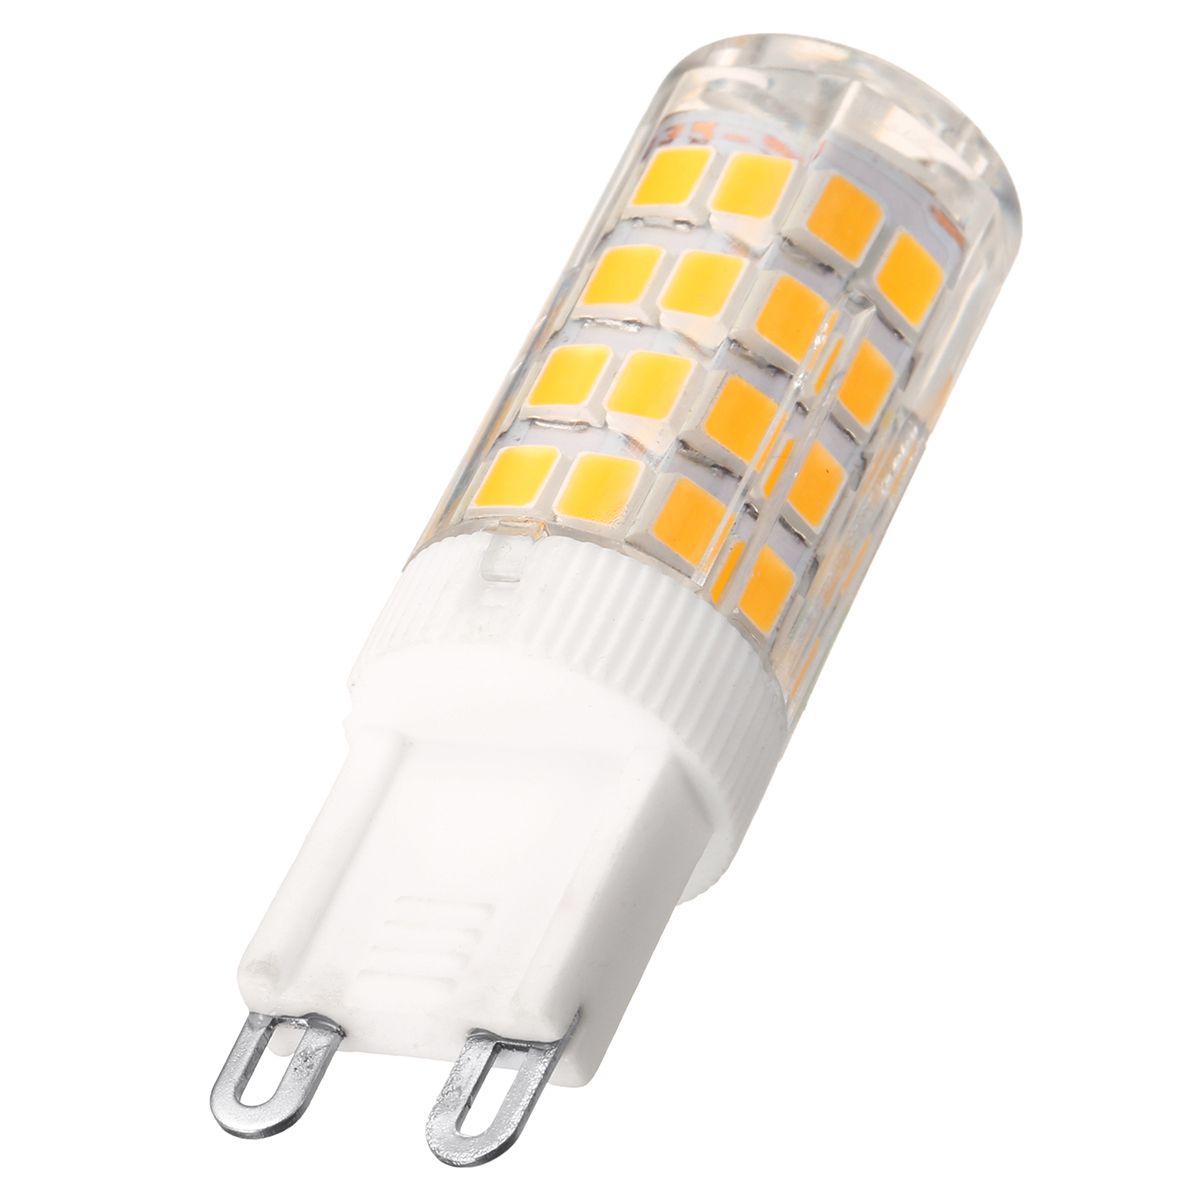 ARILUXreg-E14-G9-5W-SMD2835-Pure-White-Warm-White-LED-Corn-Light-Bulb-No-Flicker-AC220V-1225338